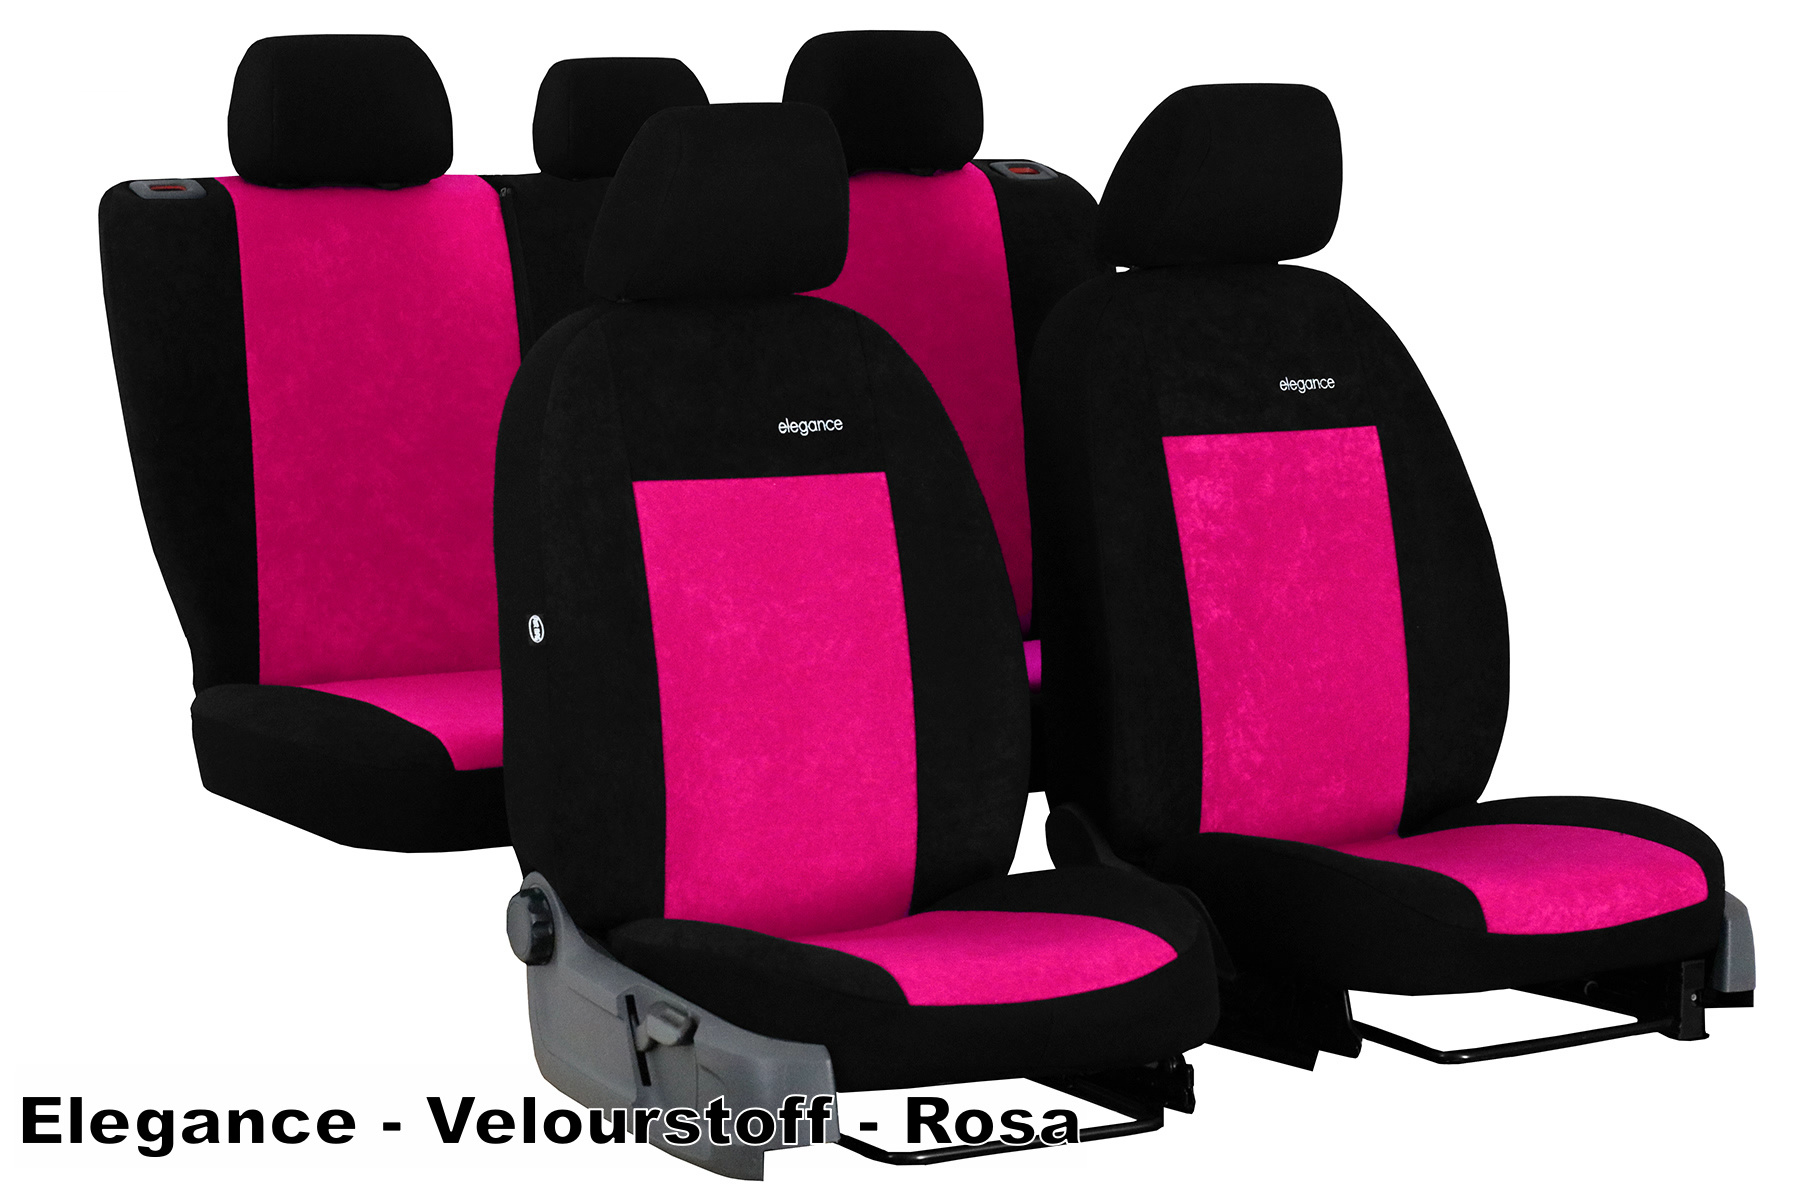 Pink Erdbeere Auto Sitzbezüge für Fahrzeug, Auto Sitzbezug für Frauen.  Erdbeere Print Auto Sitzaufbedeckung -  Schweiz